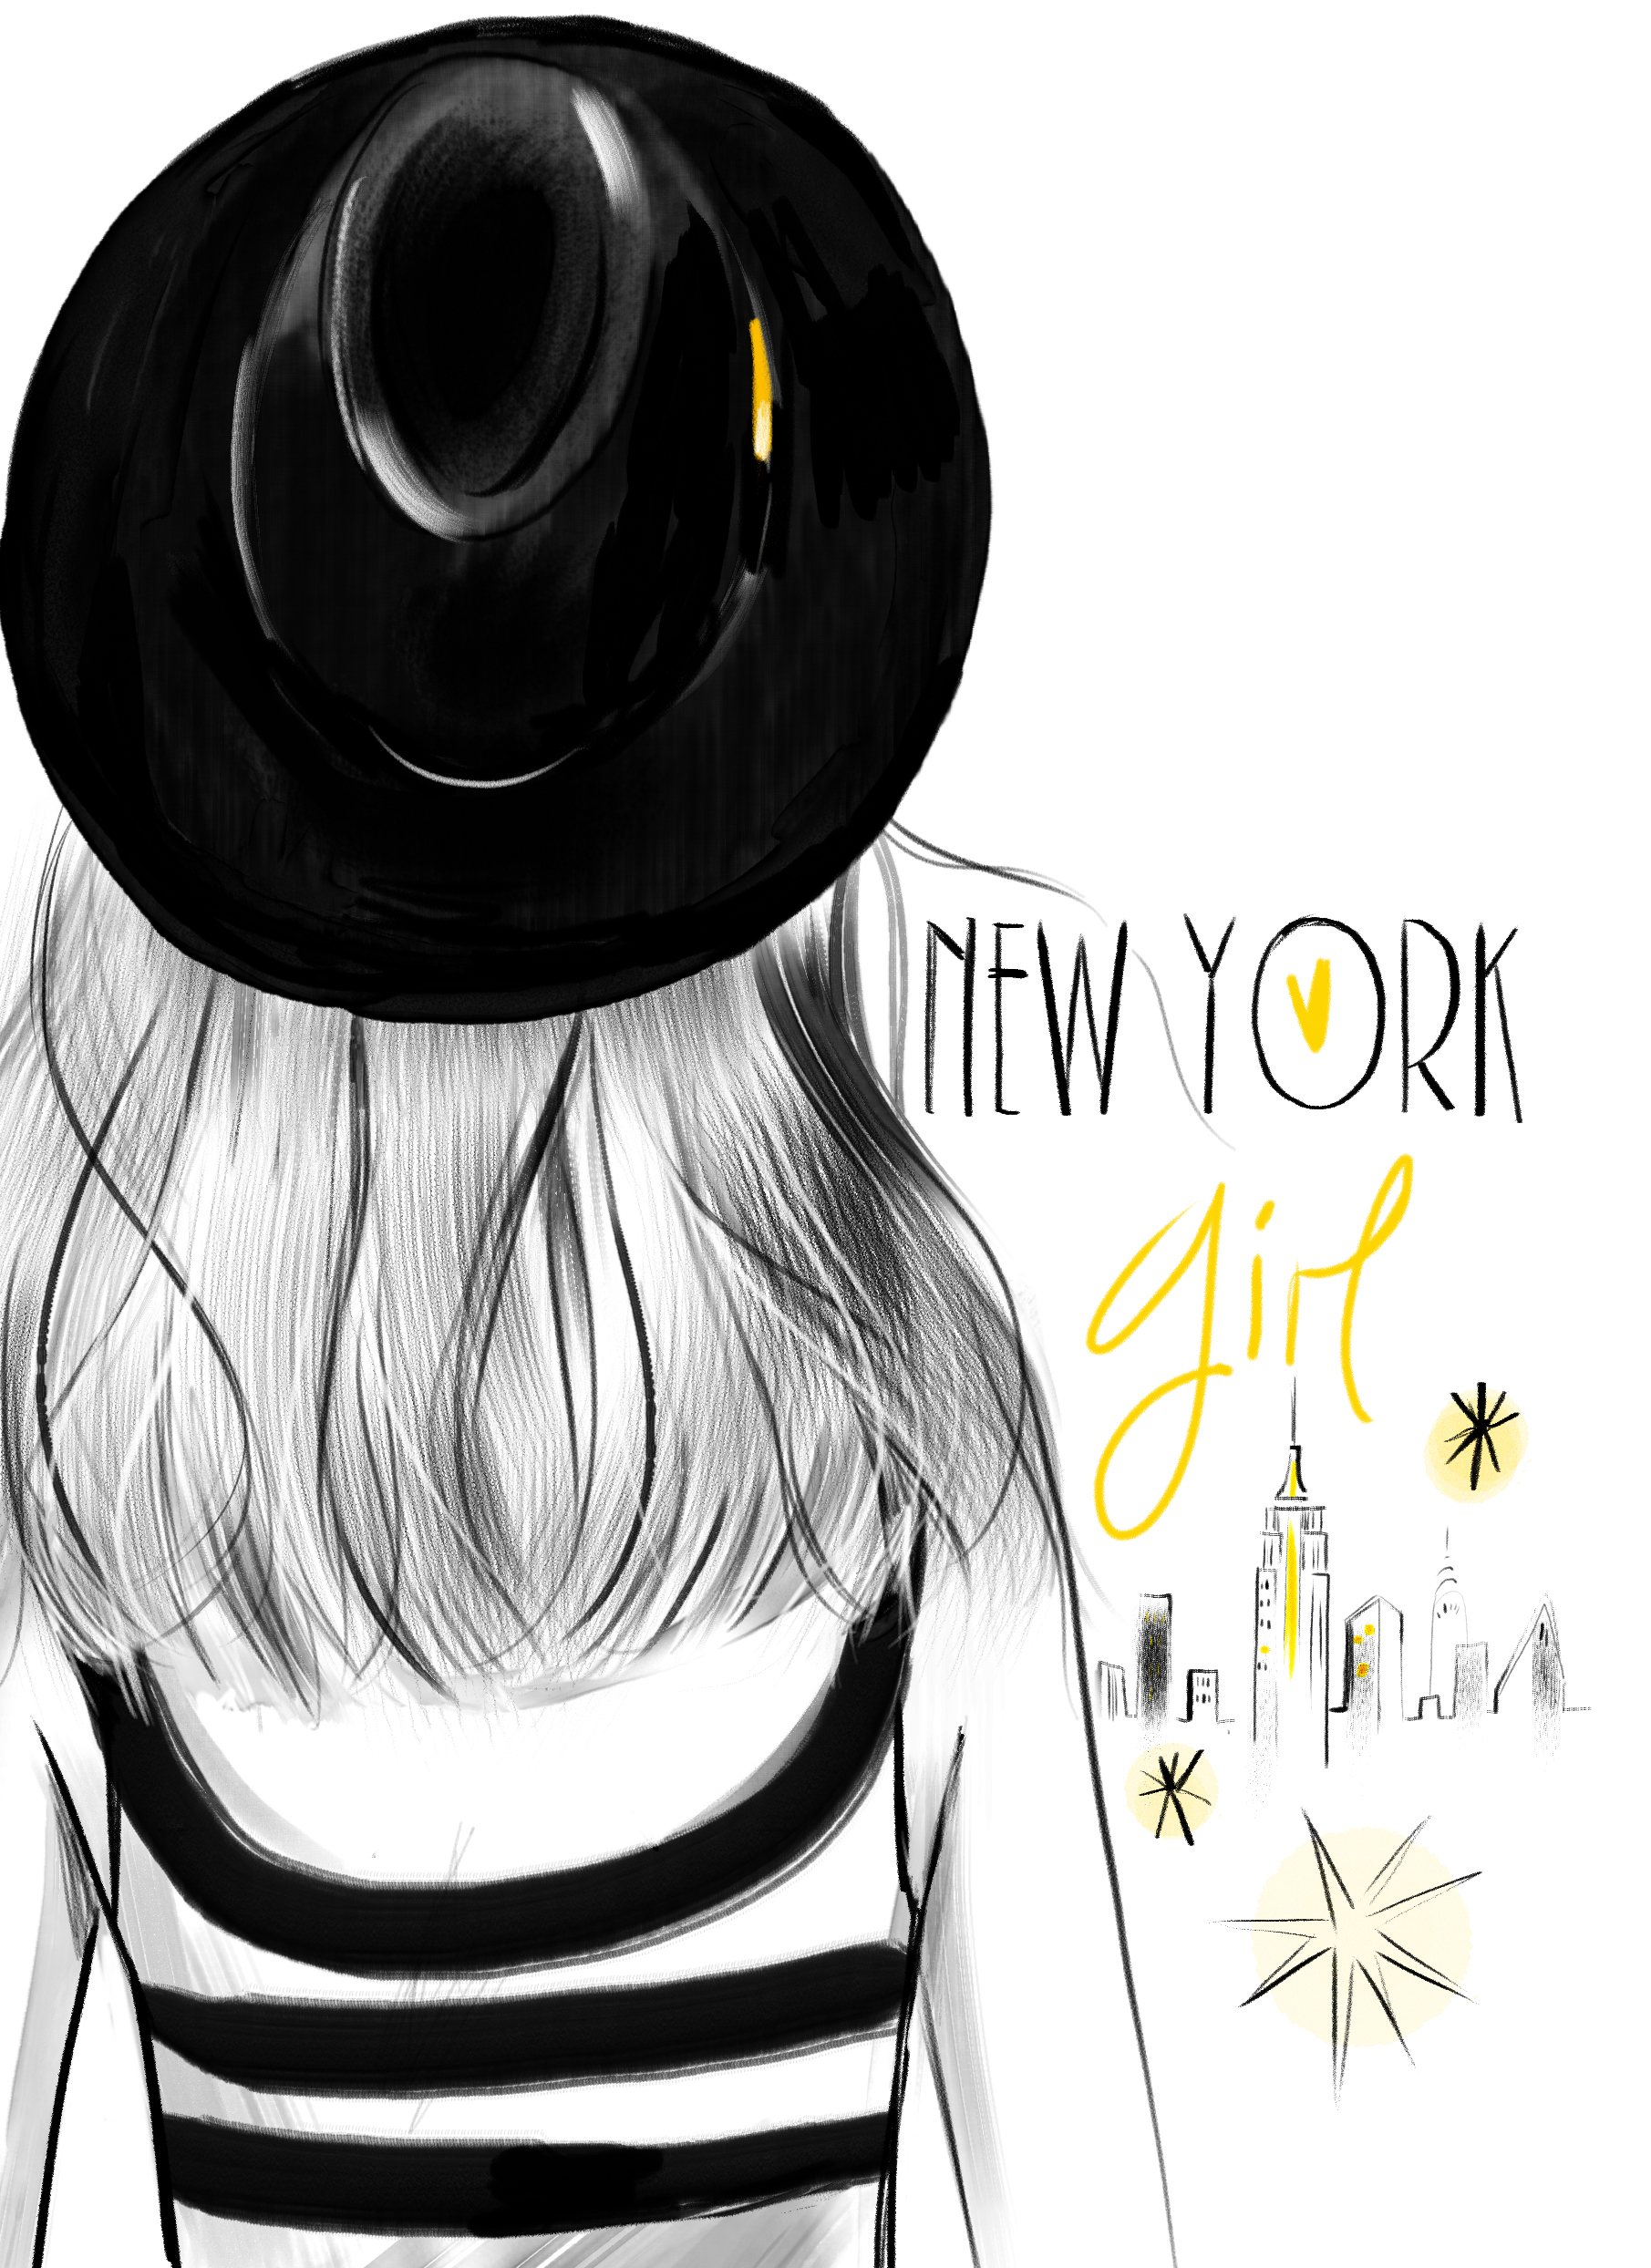 Lucy+truman+new+york+girl+book+illustrator+black+line+illustration+lettering